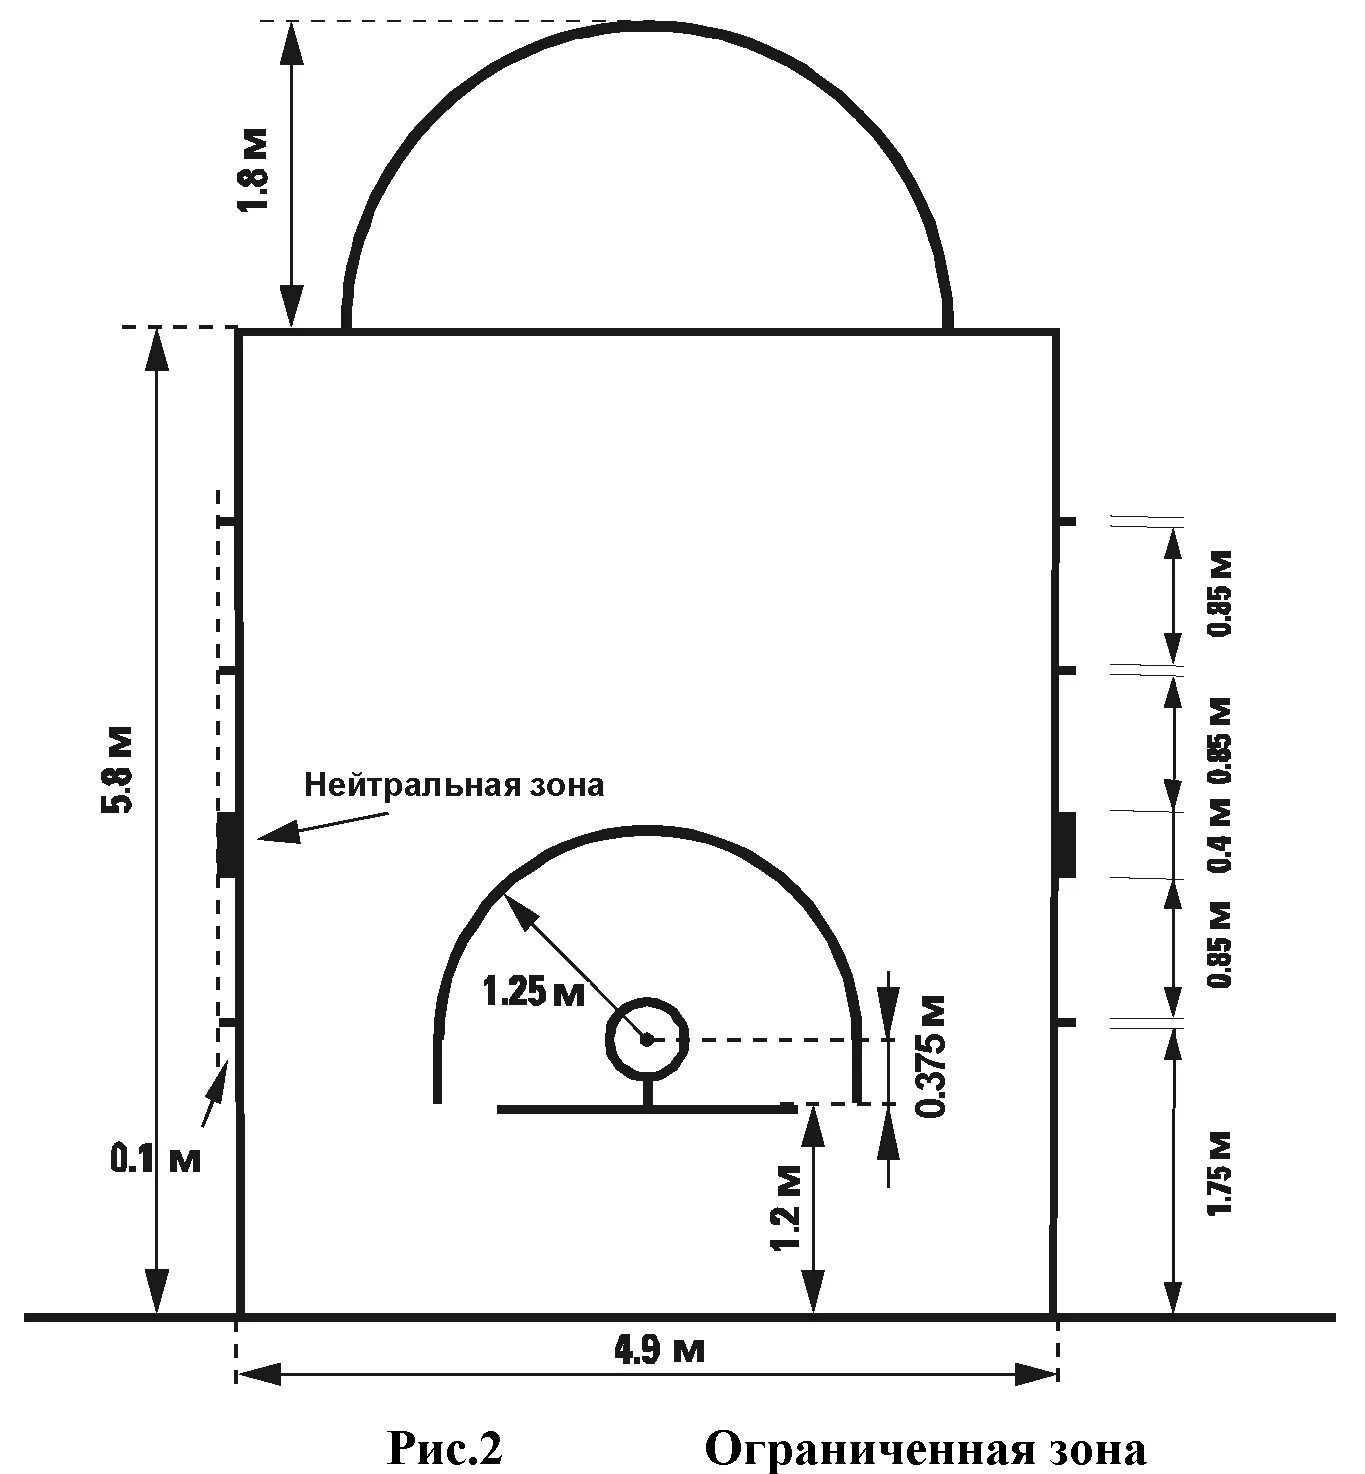 Размеры в б зоны. Разметка стритбольной площадки с размерами. Разметка площадки для баскетбола 3х3. Разметка для стритбола 3х3. Размер стритбольной площадки 3х3.